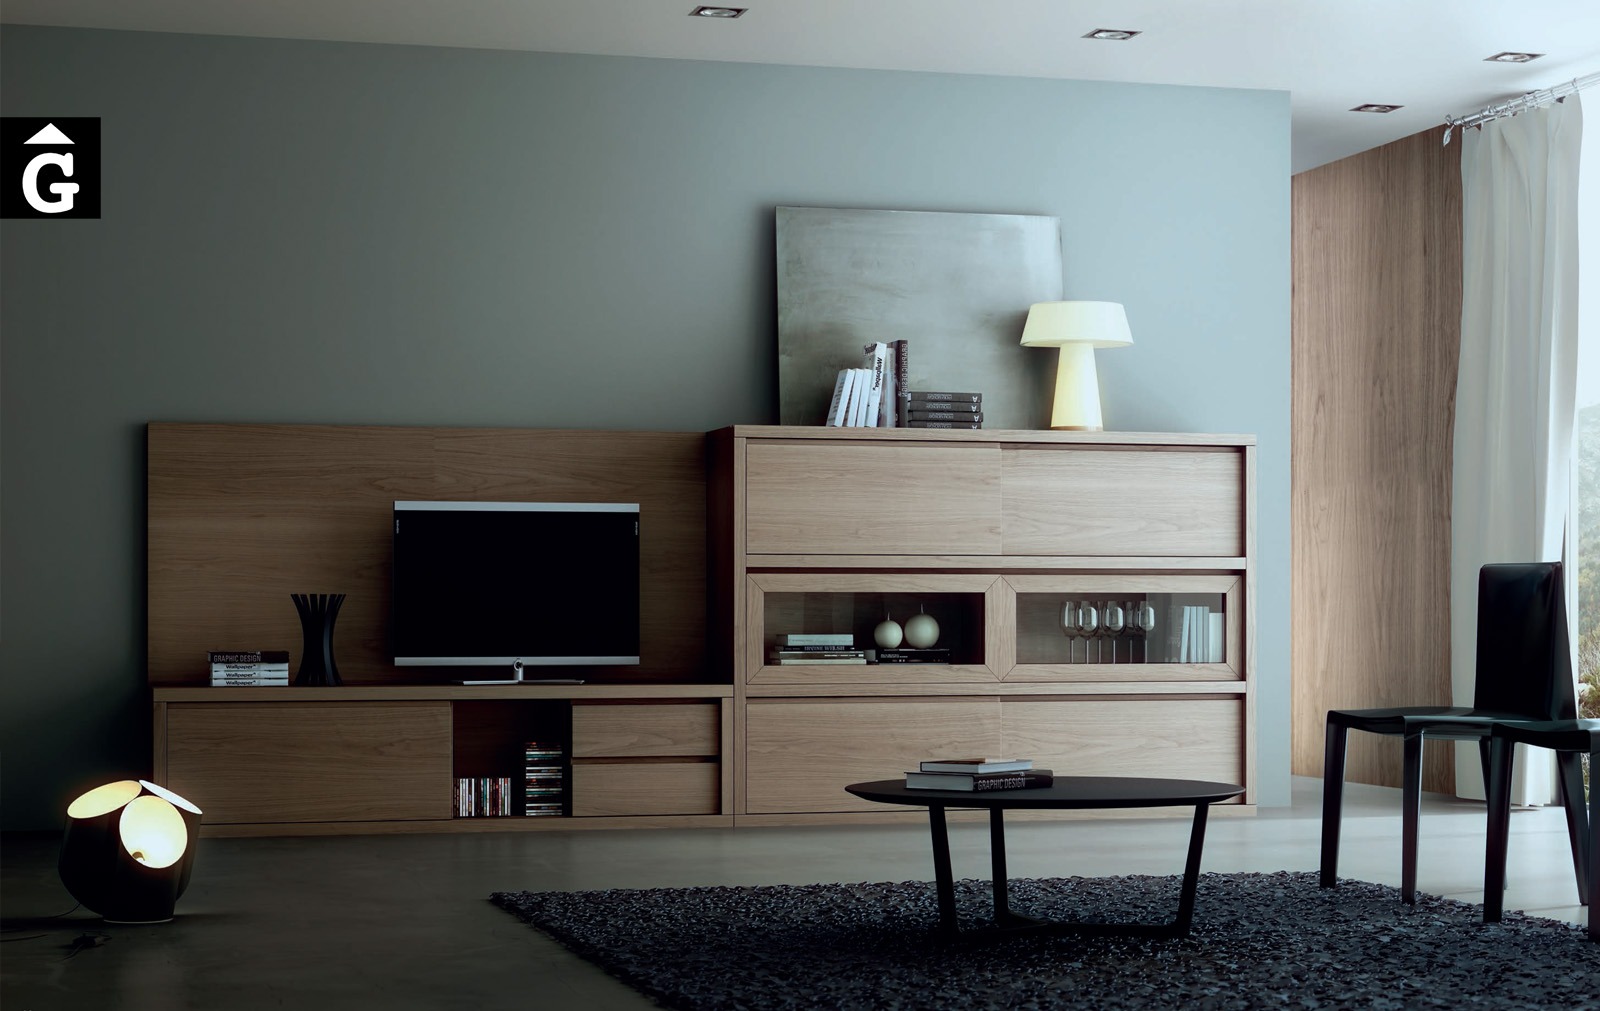 36 0 mobles Ciurans per mobles Gifreu peces singulars de molta qualitat modern minimal taules cadires llits aparadors